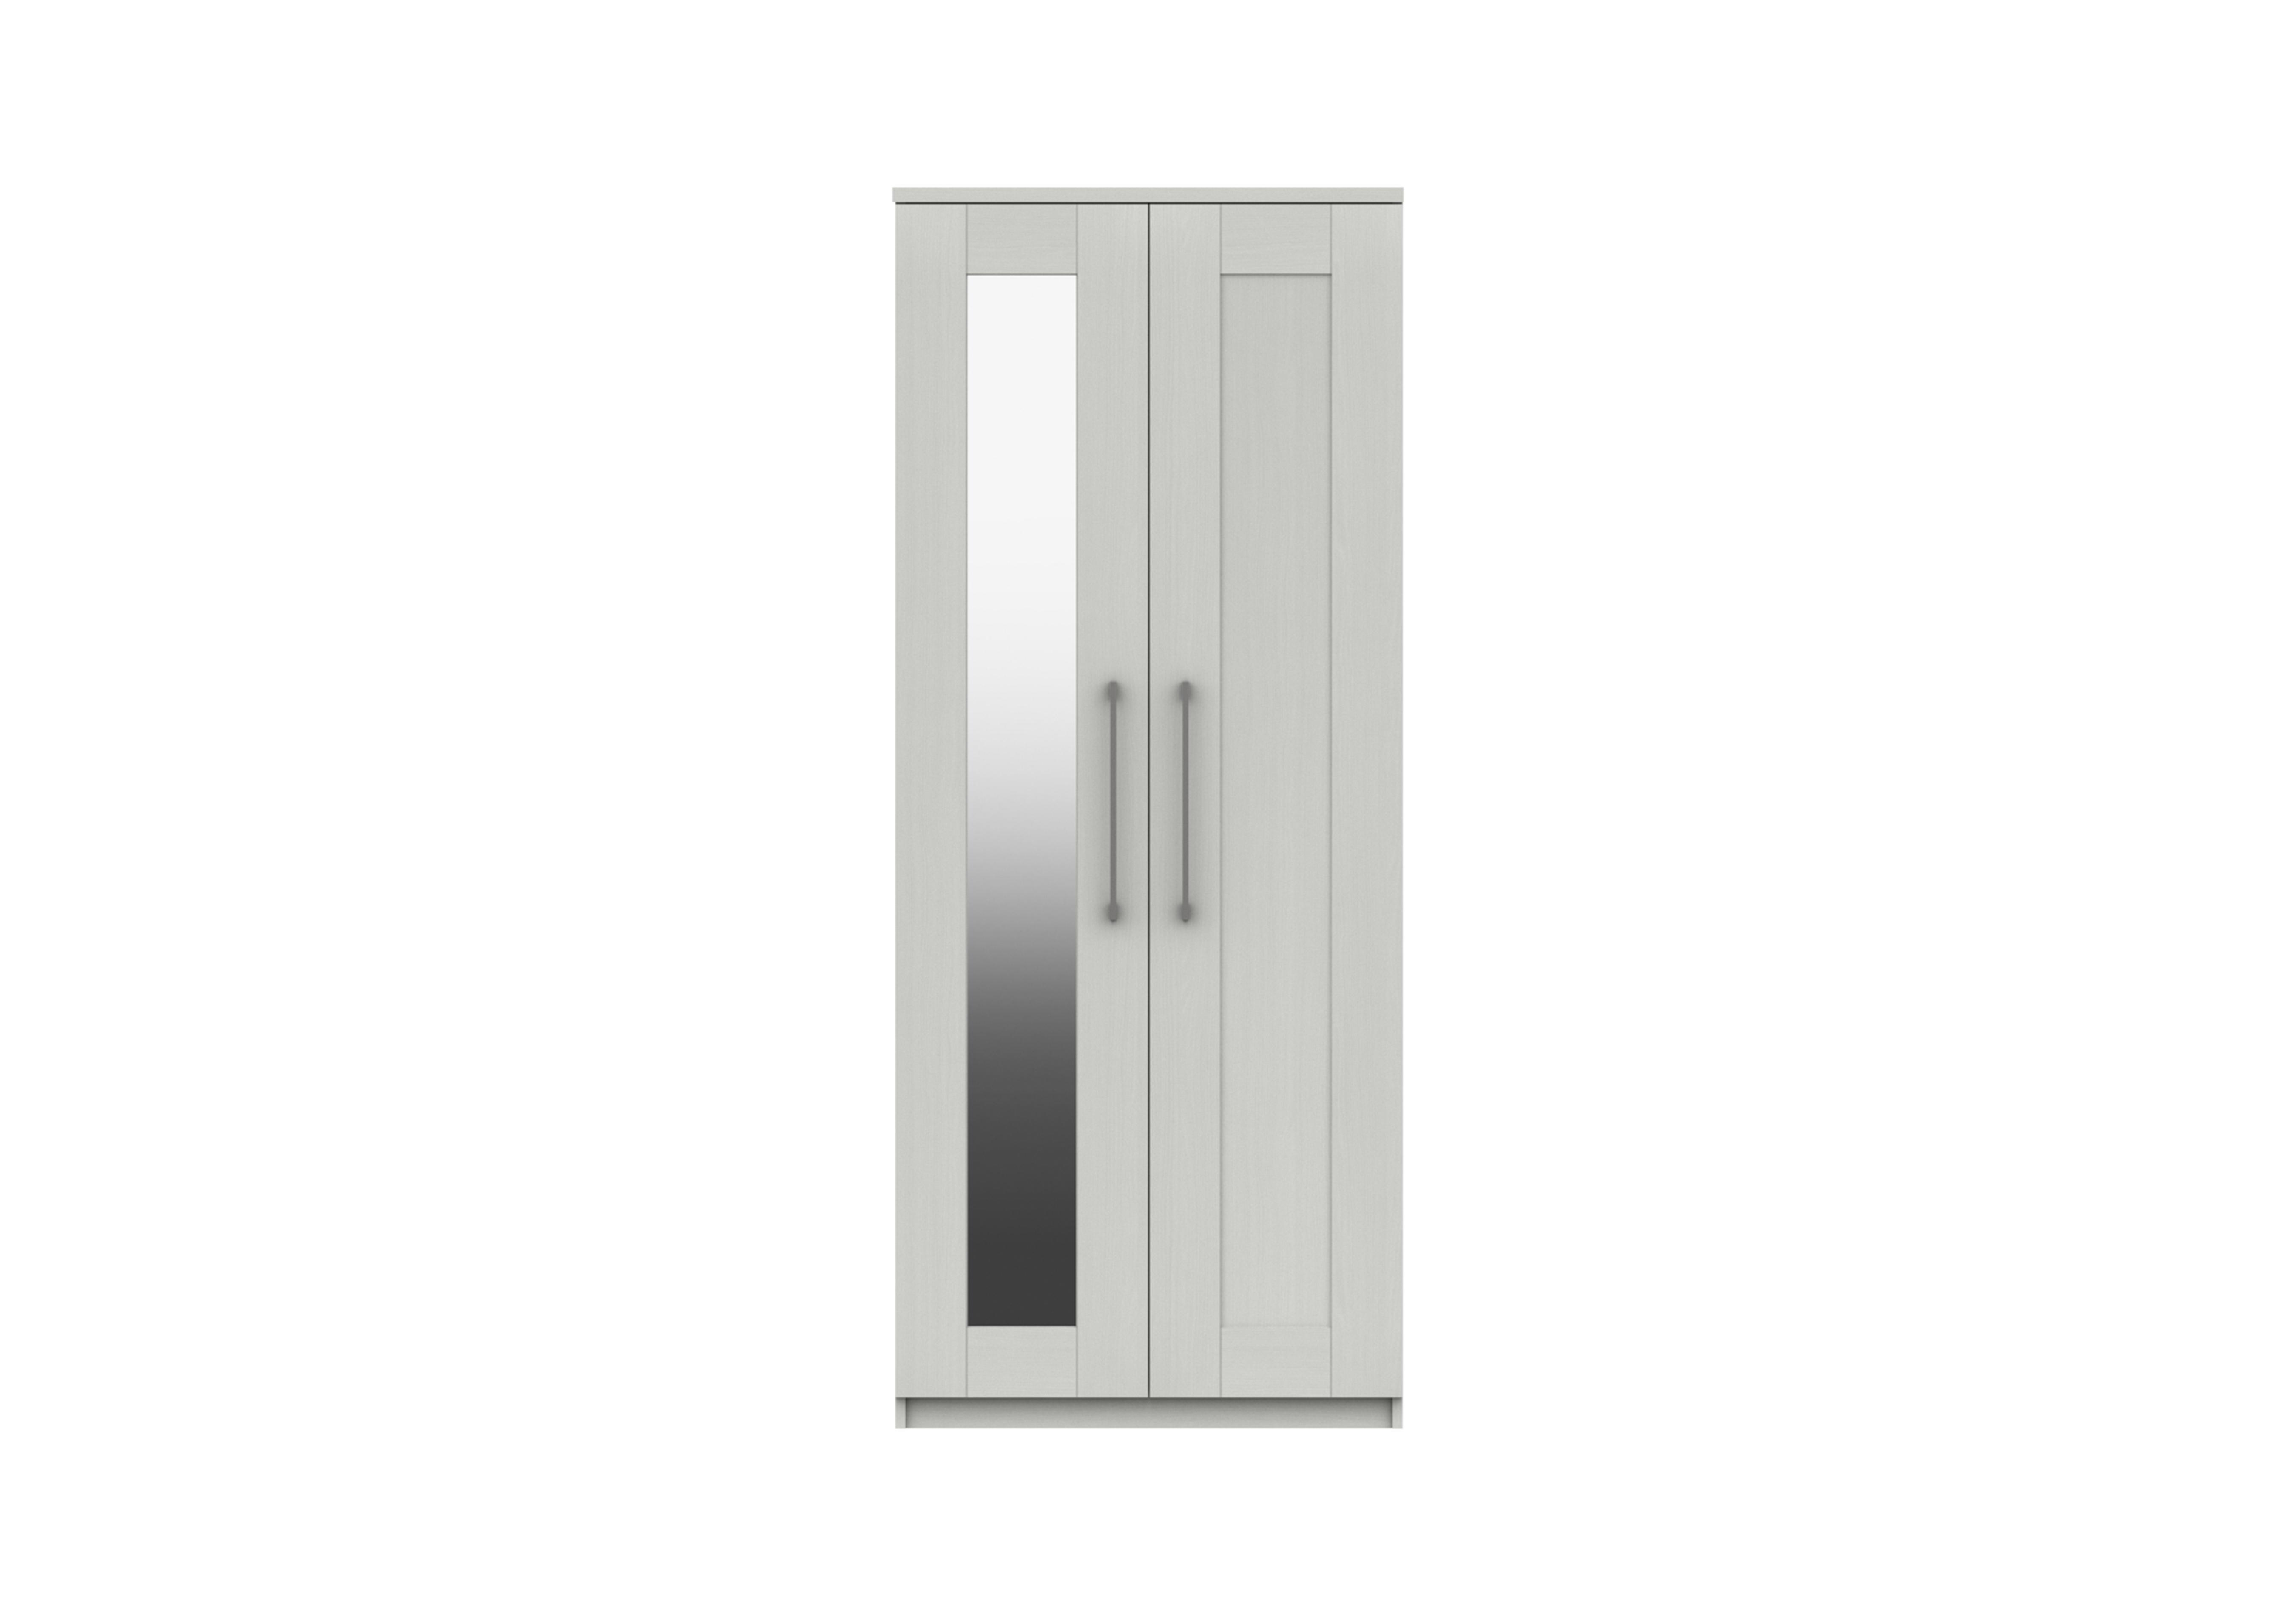 Fenchurch 2 Door Wardrobe with Mirror in White on Furniture Village